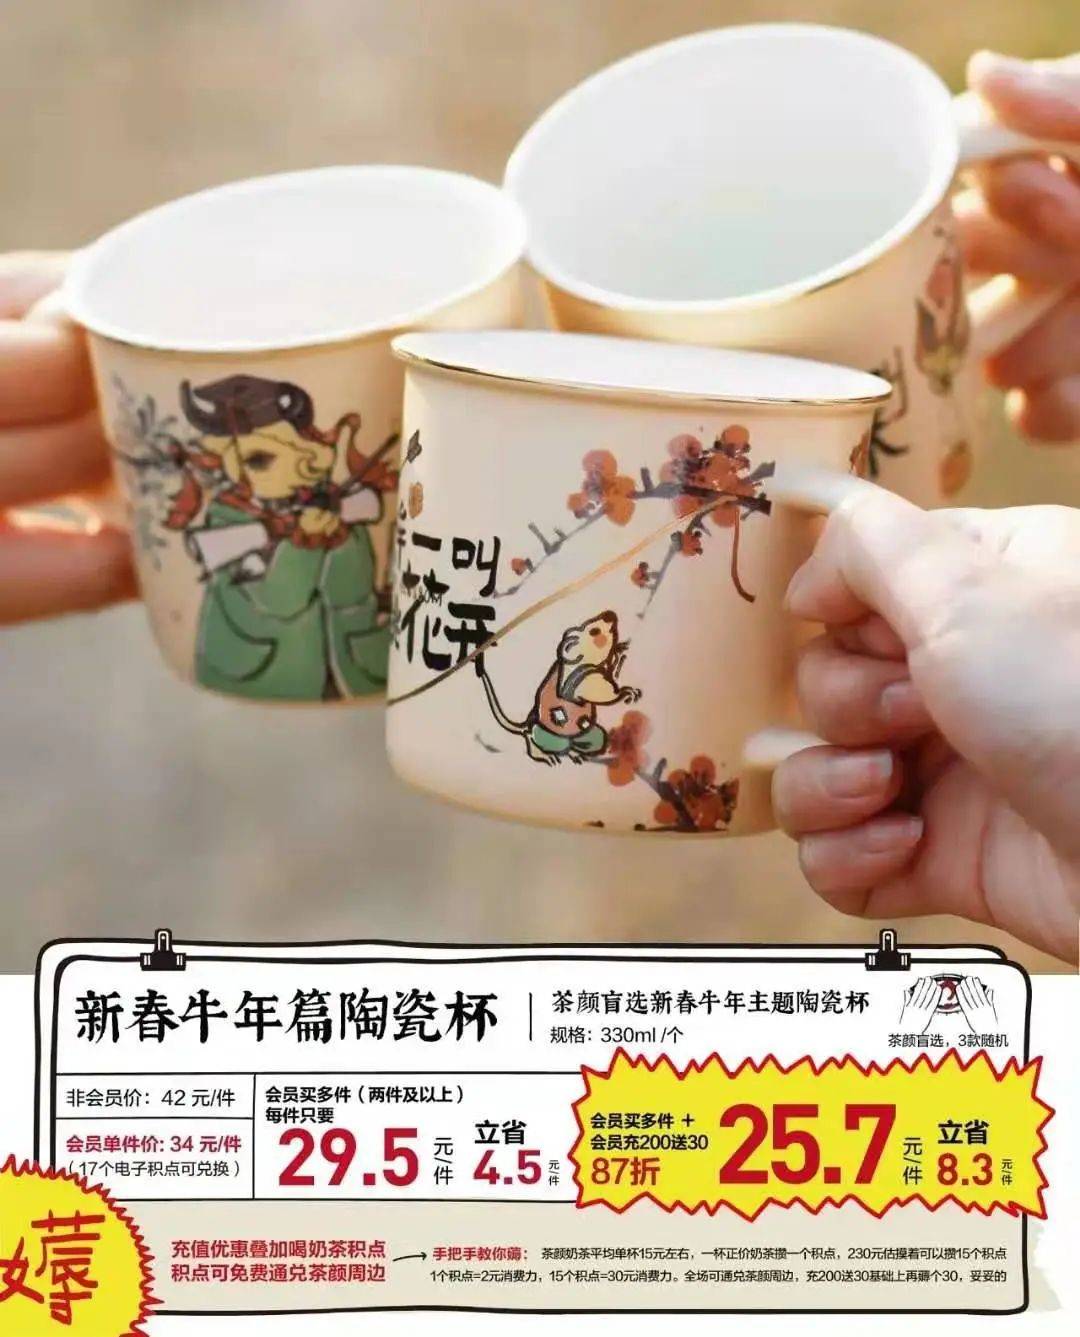 茶饮品牌卖杯子 是门潜在的生意